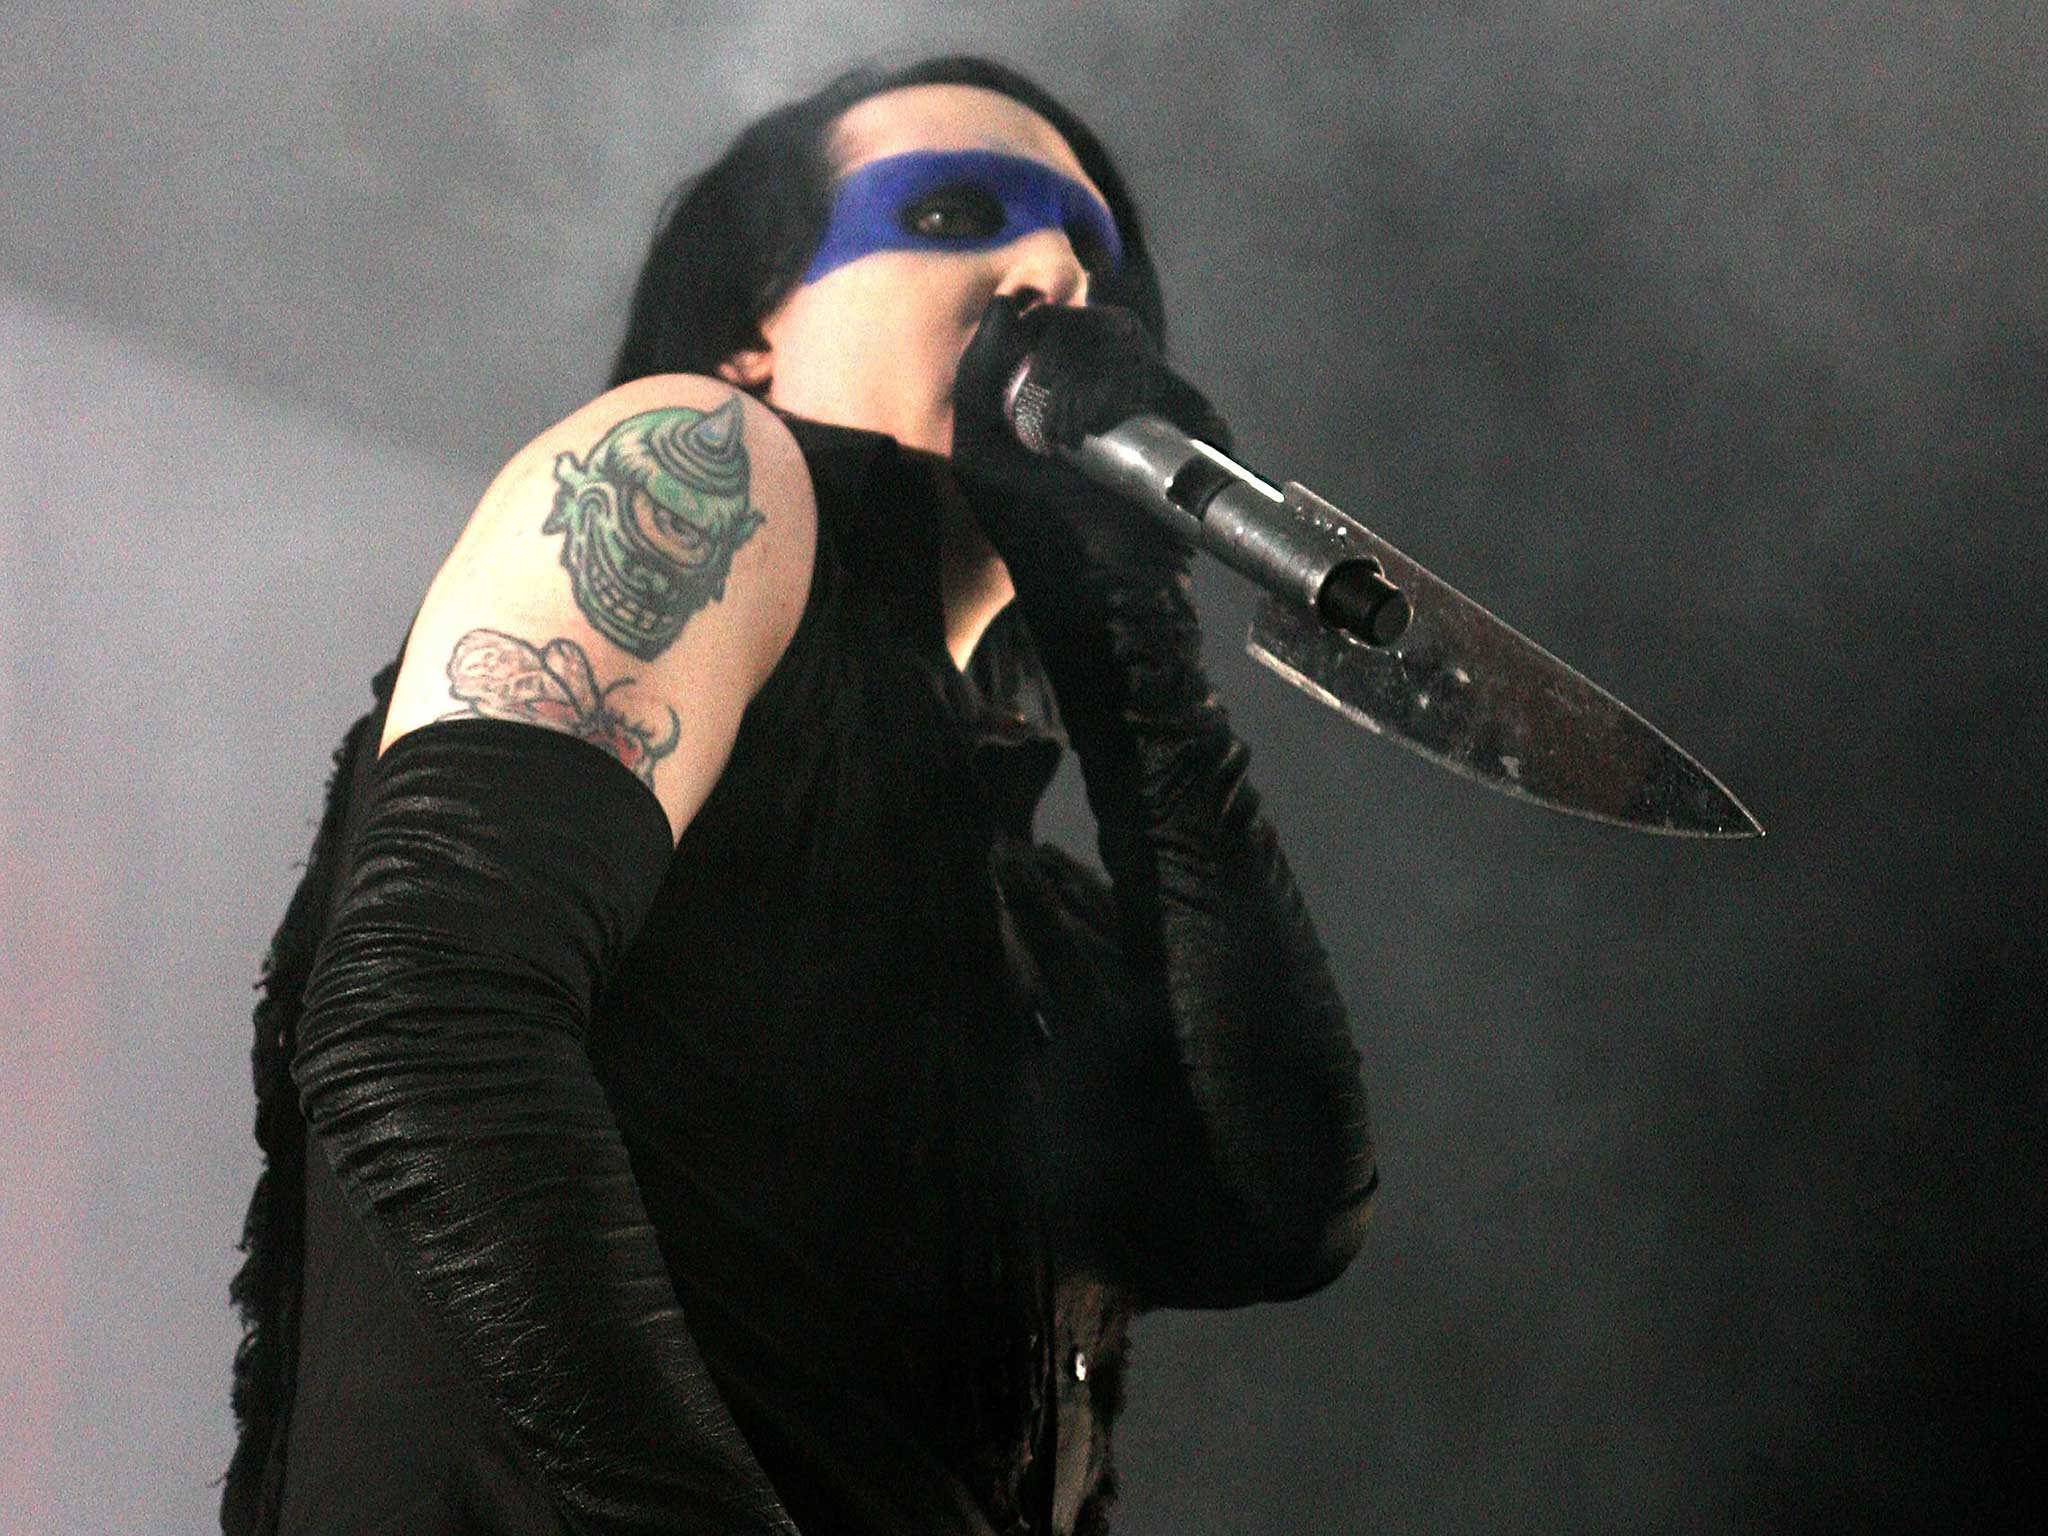 Goth rock star Marilyn Manson